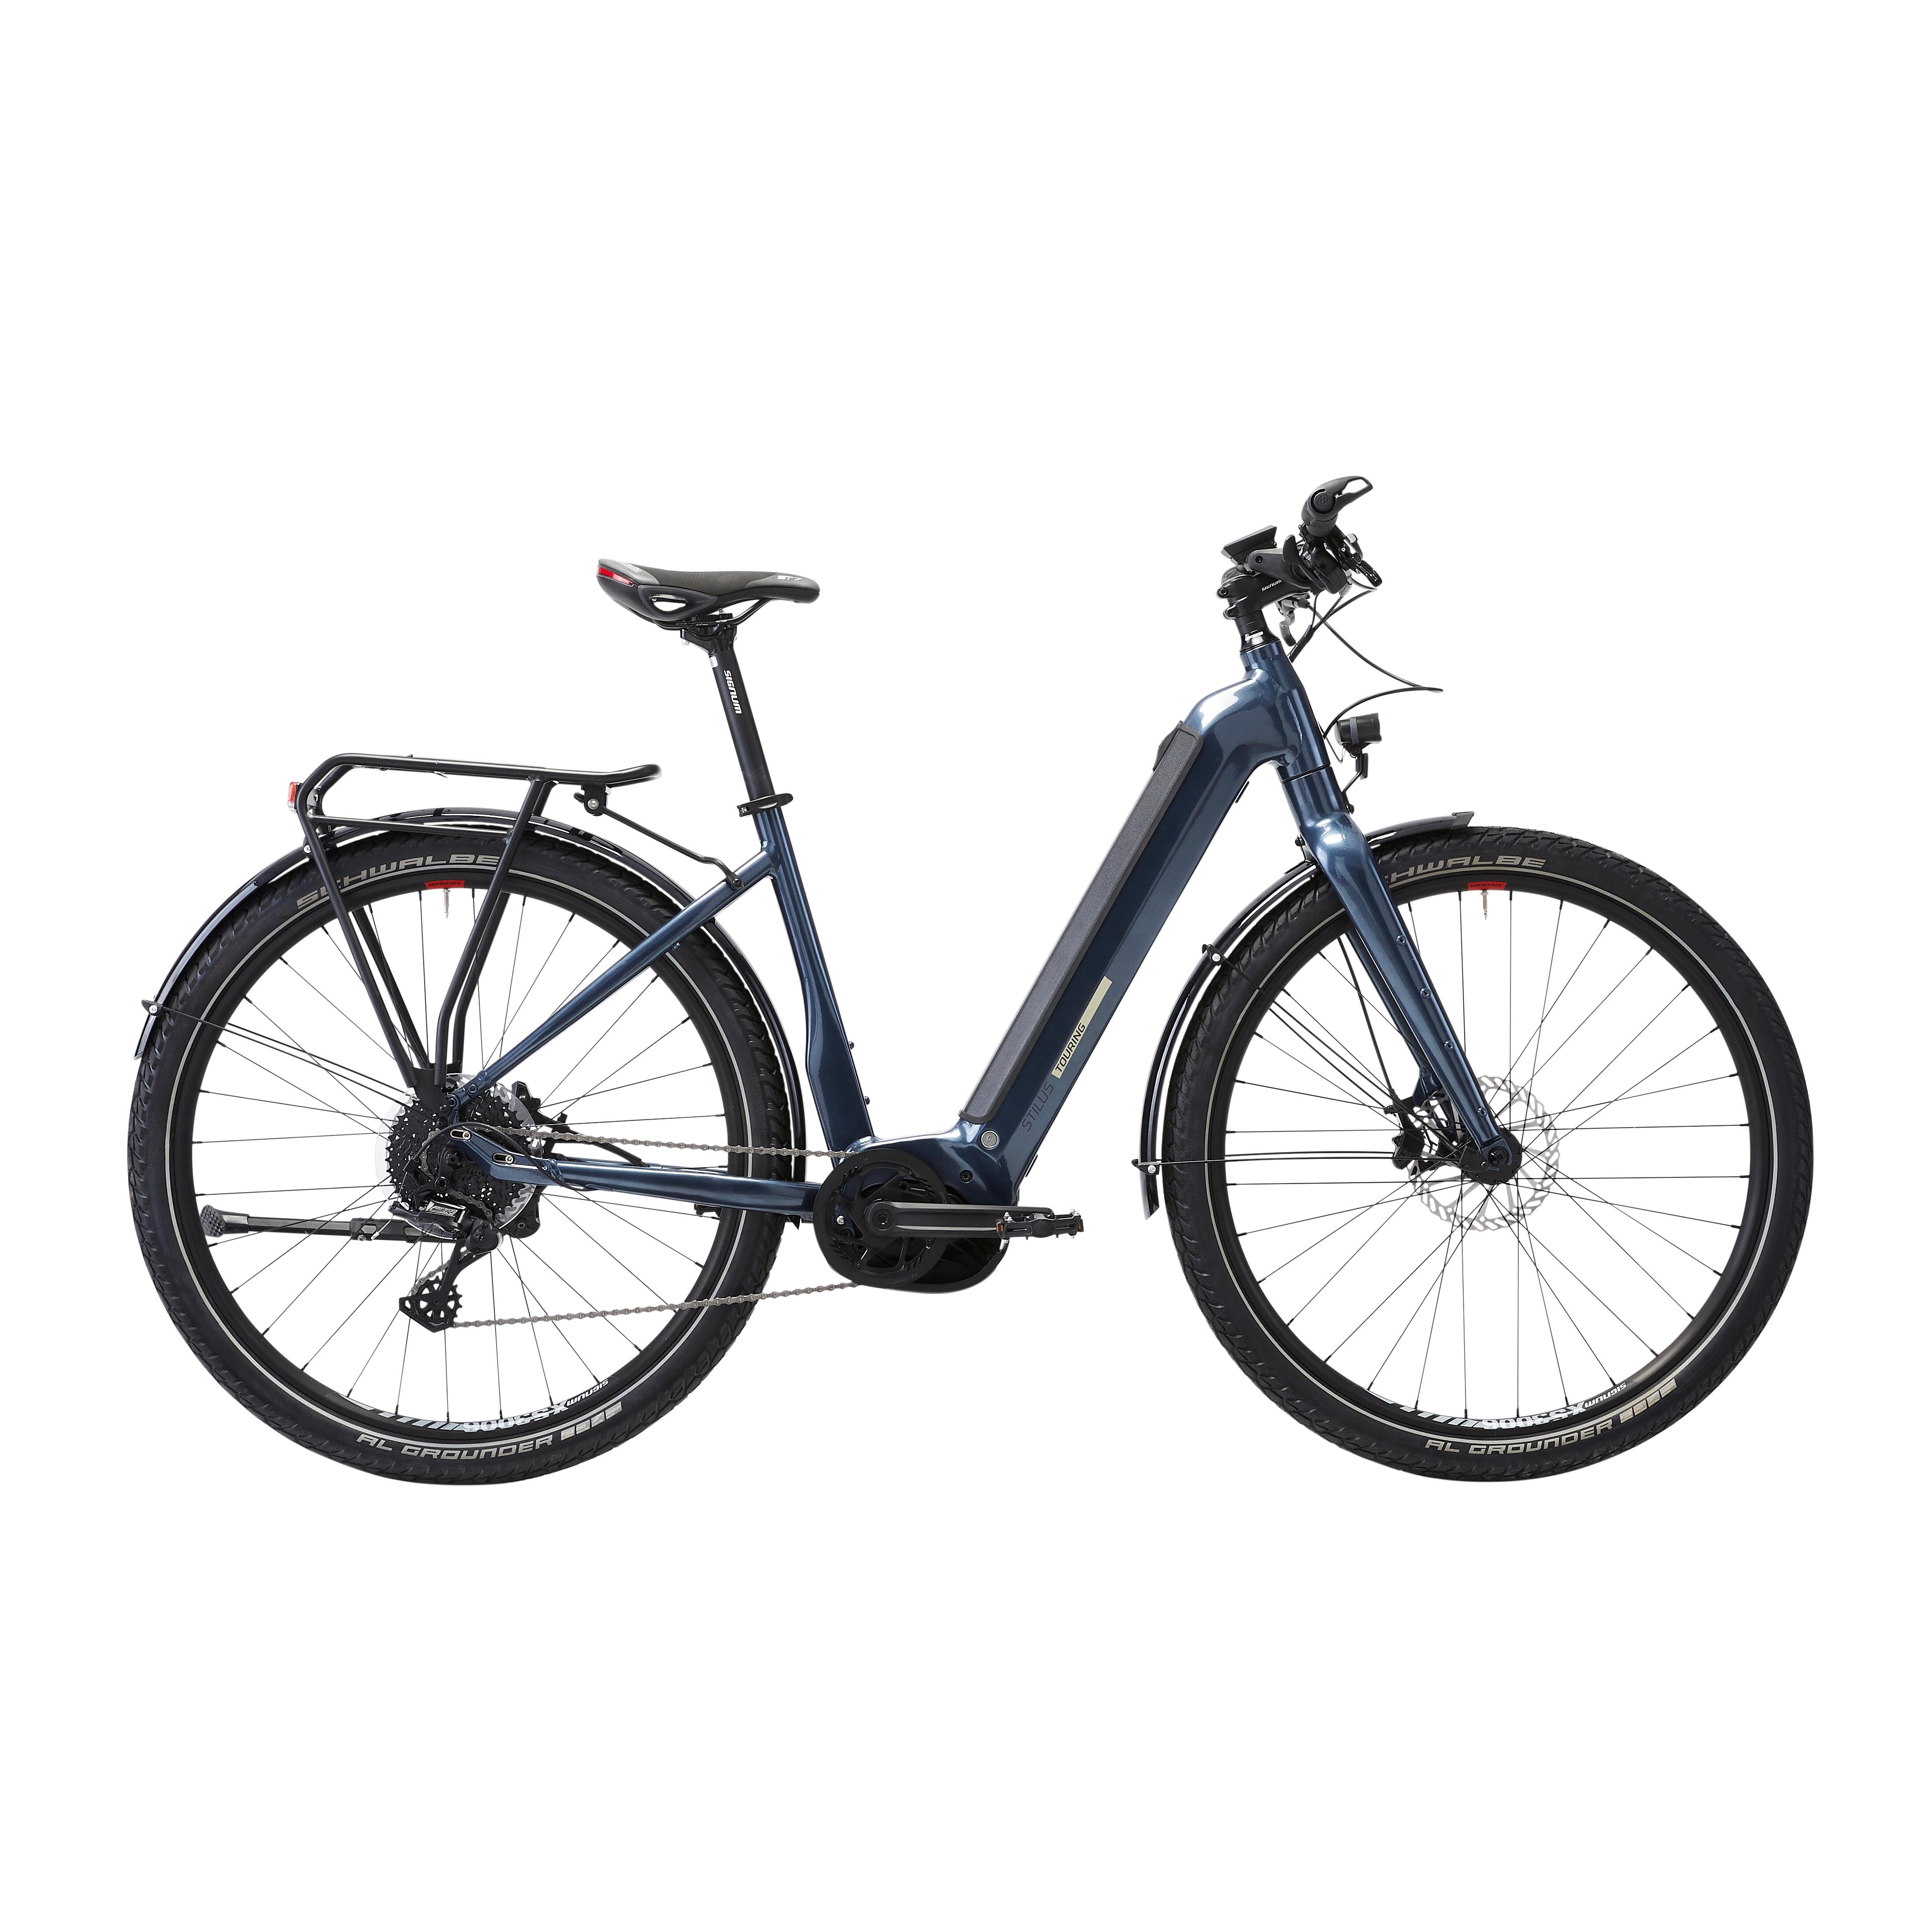 Bicicletă electrică de călătorie cu motor central puternic Bosch – Stilus E-Touring LF La Oferta Online decathlon imagine La Oferta Online